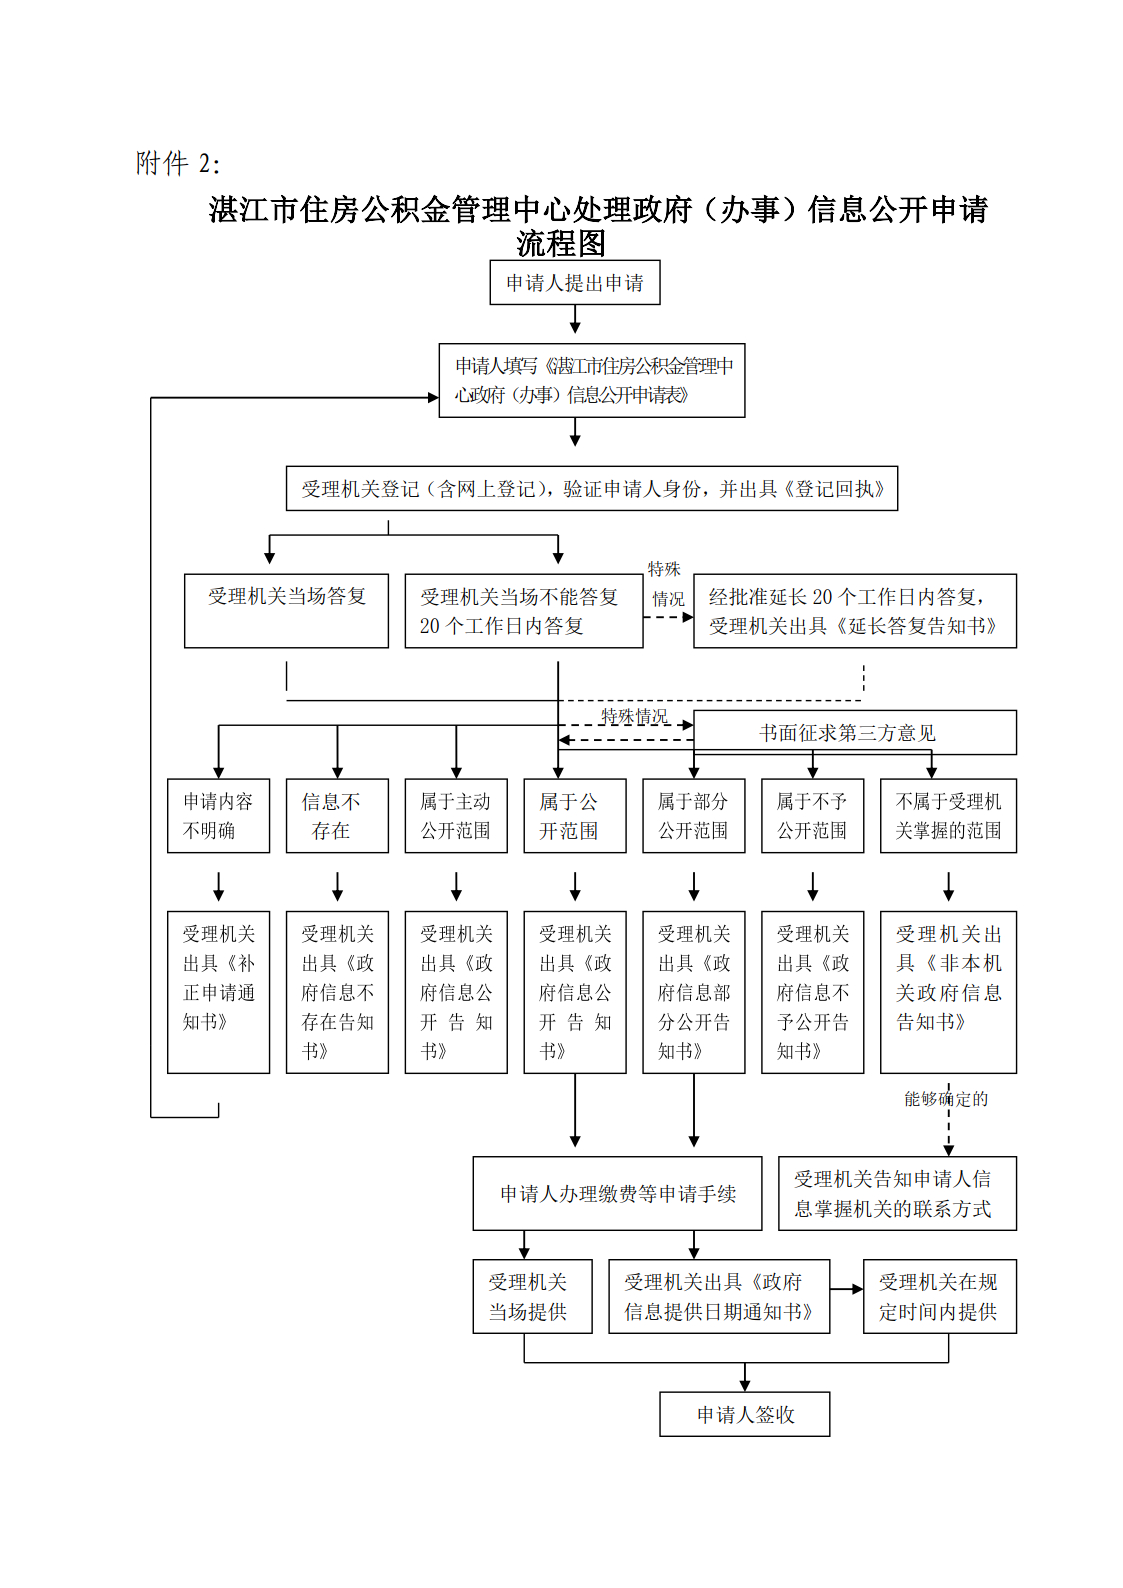 湛江市住房公积金管理中心处理政府（办事）信息公开申请流程图.jpg